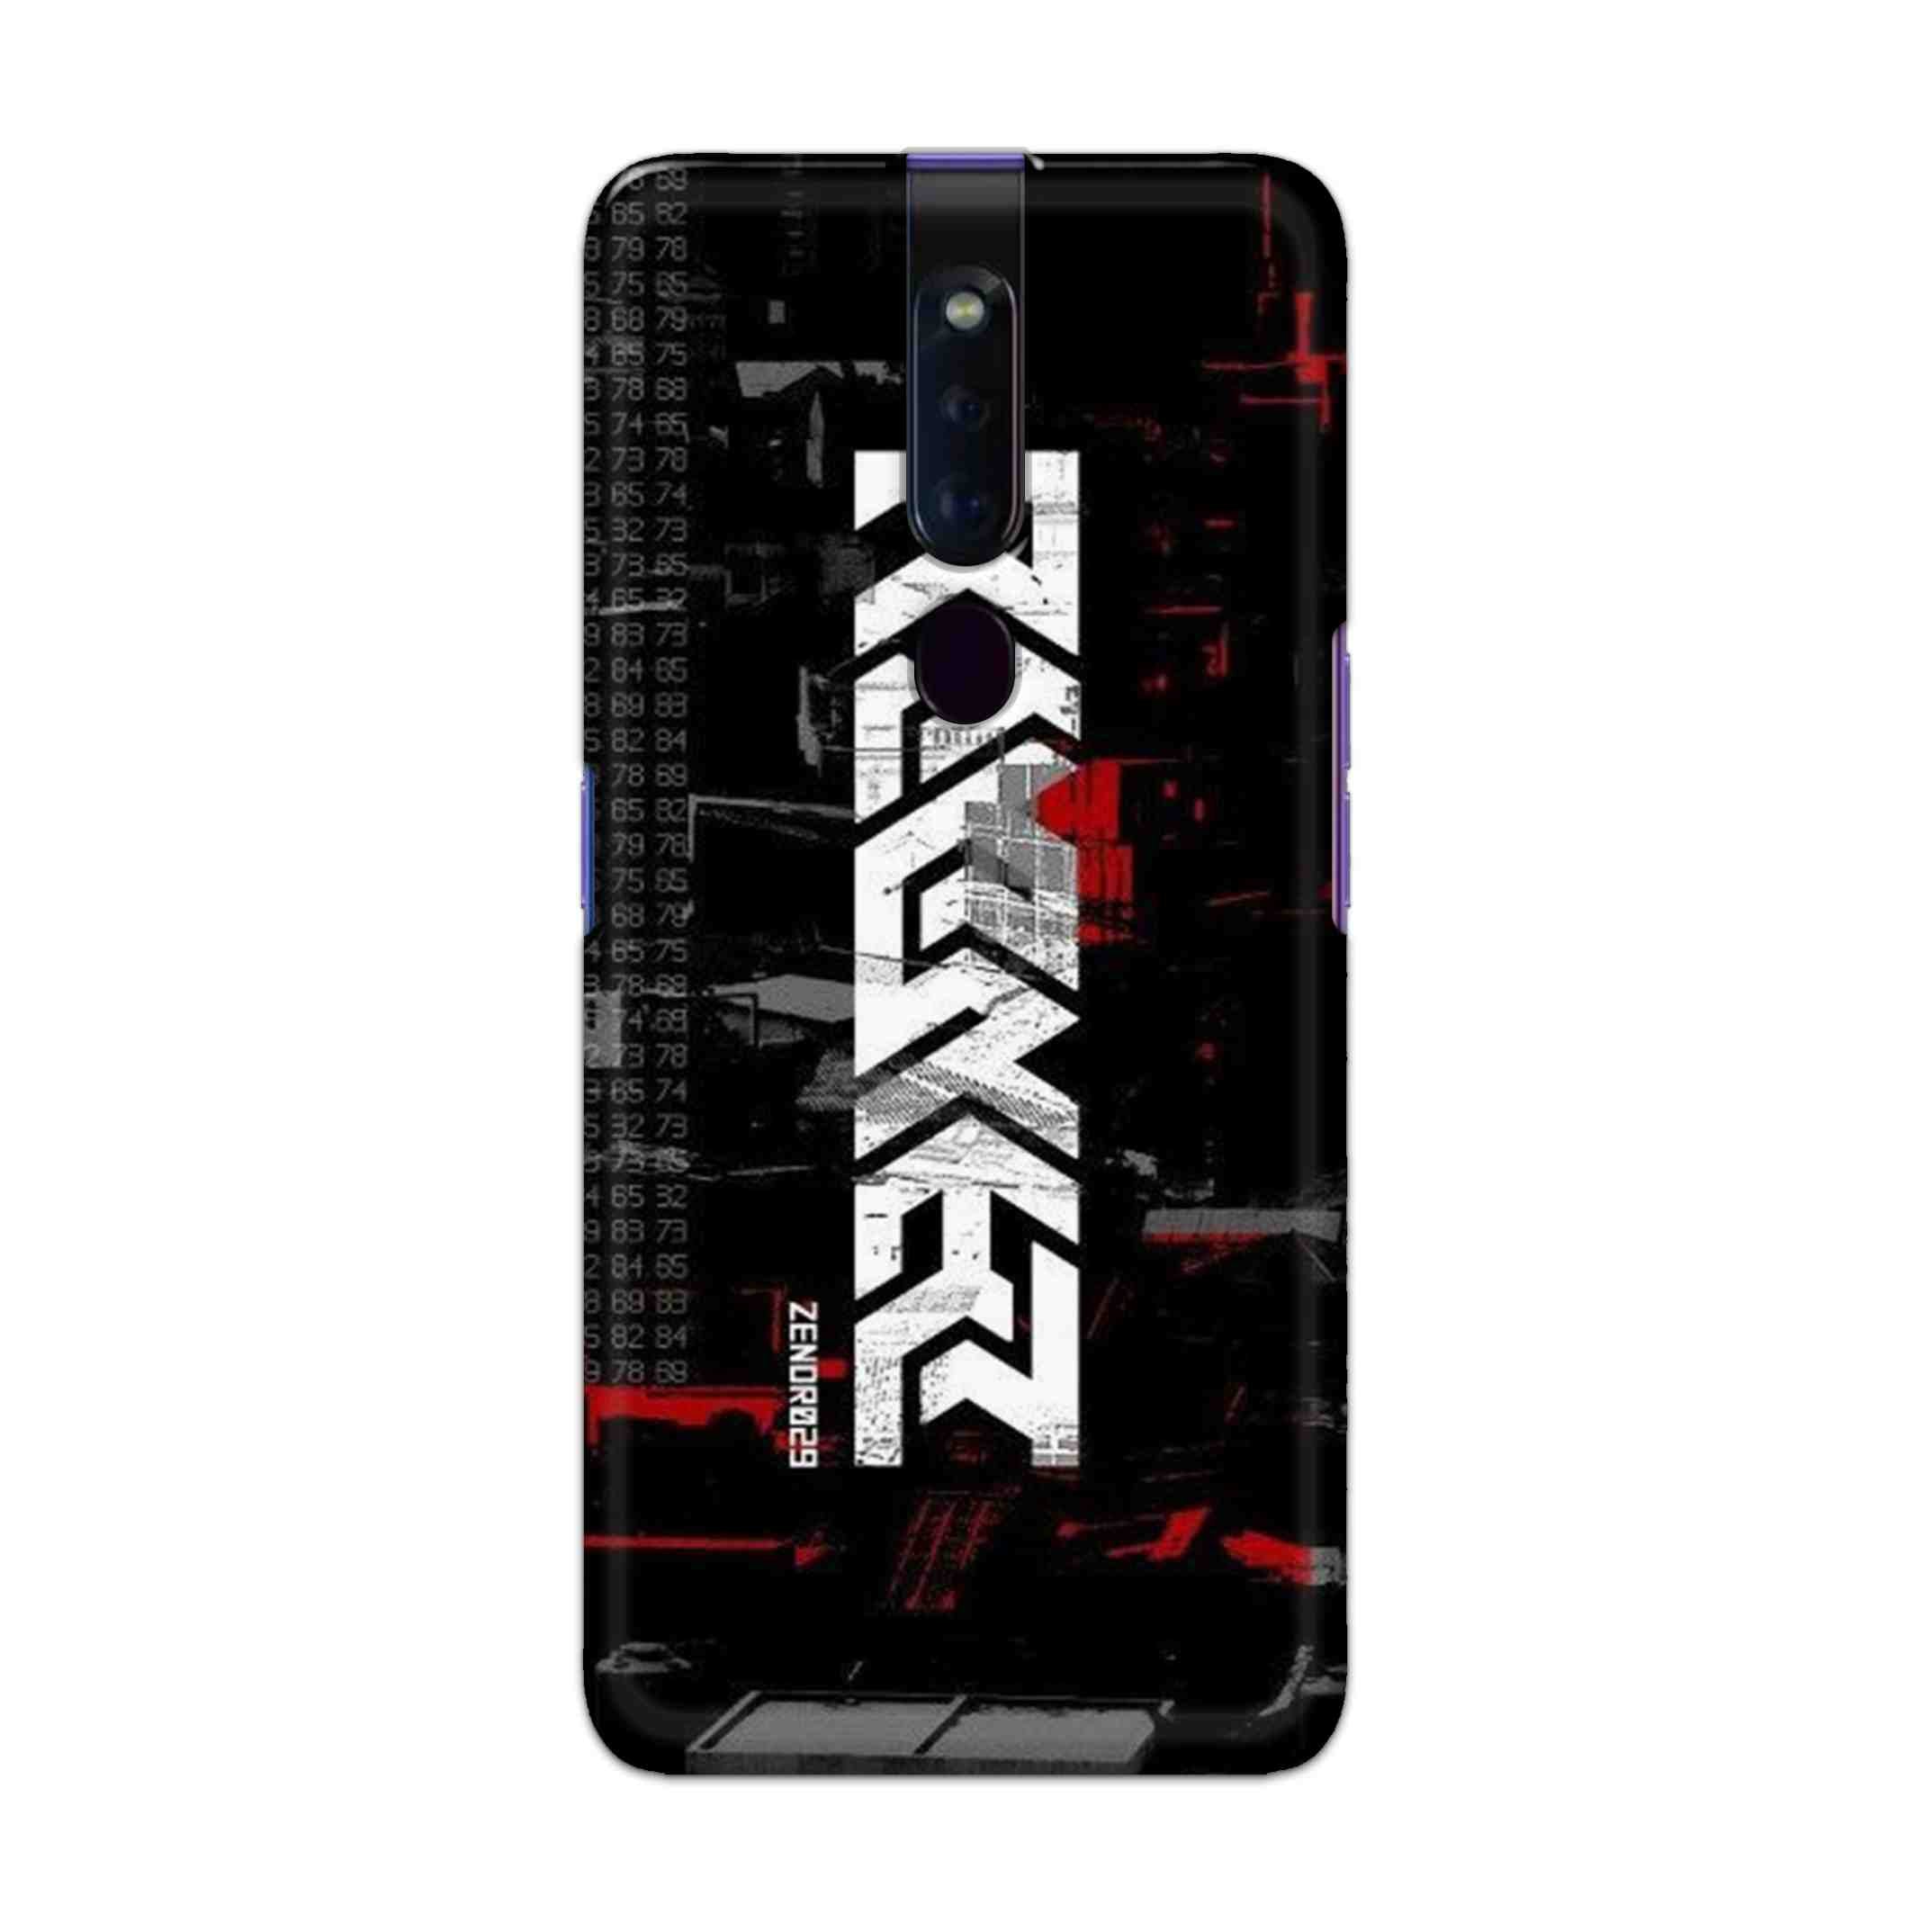 Buy Raxer Hard Back Mobile Phone Case Cover For Oppo F11 Pro Online